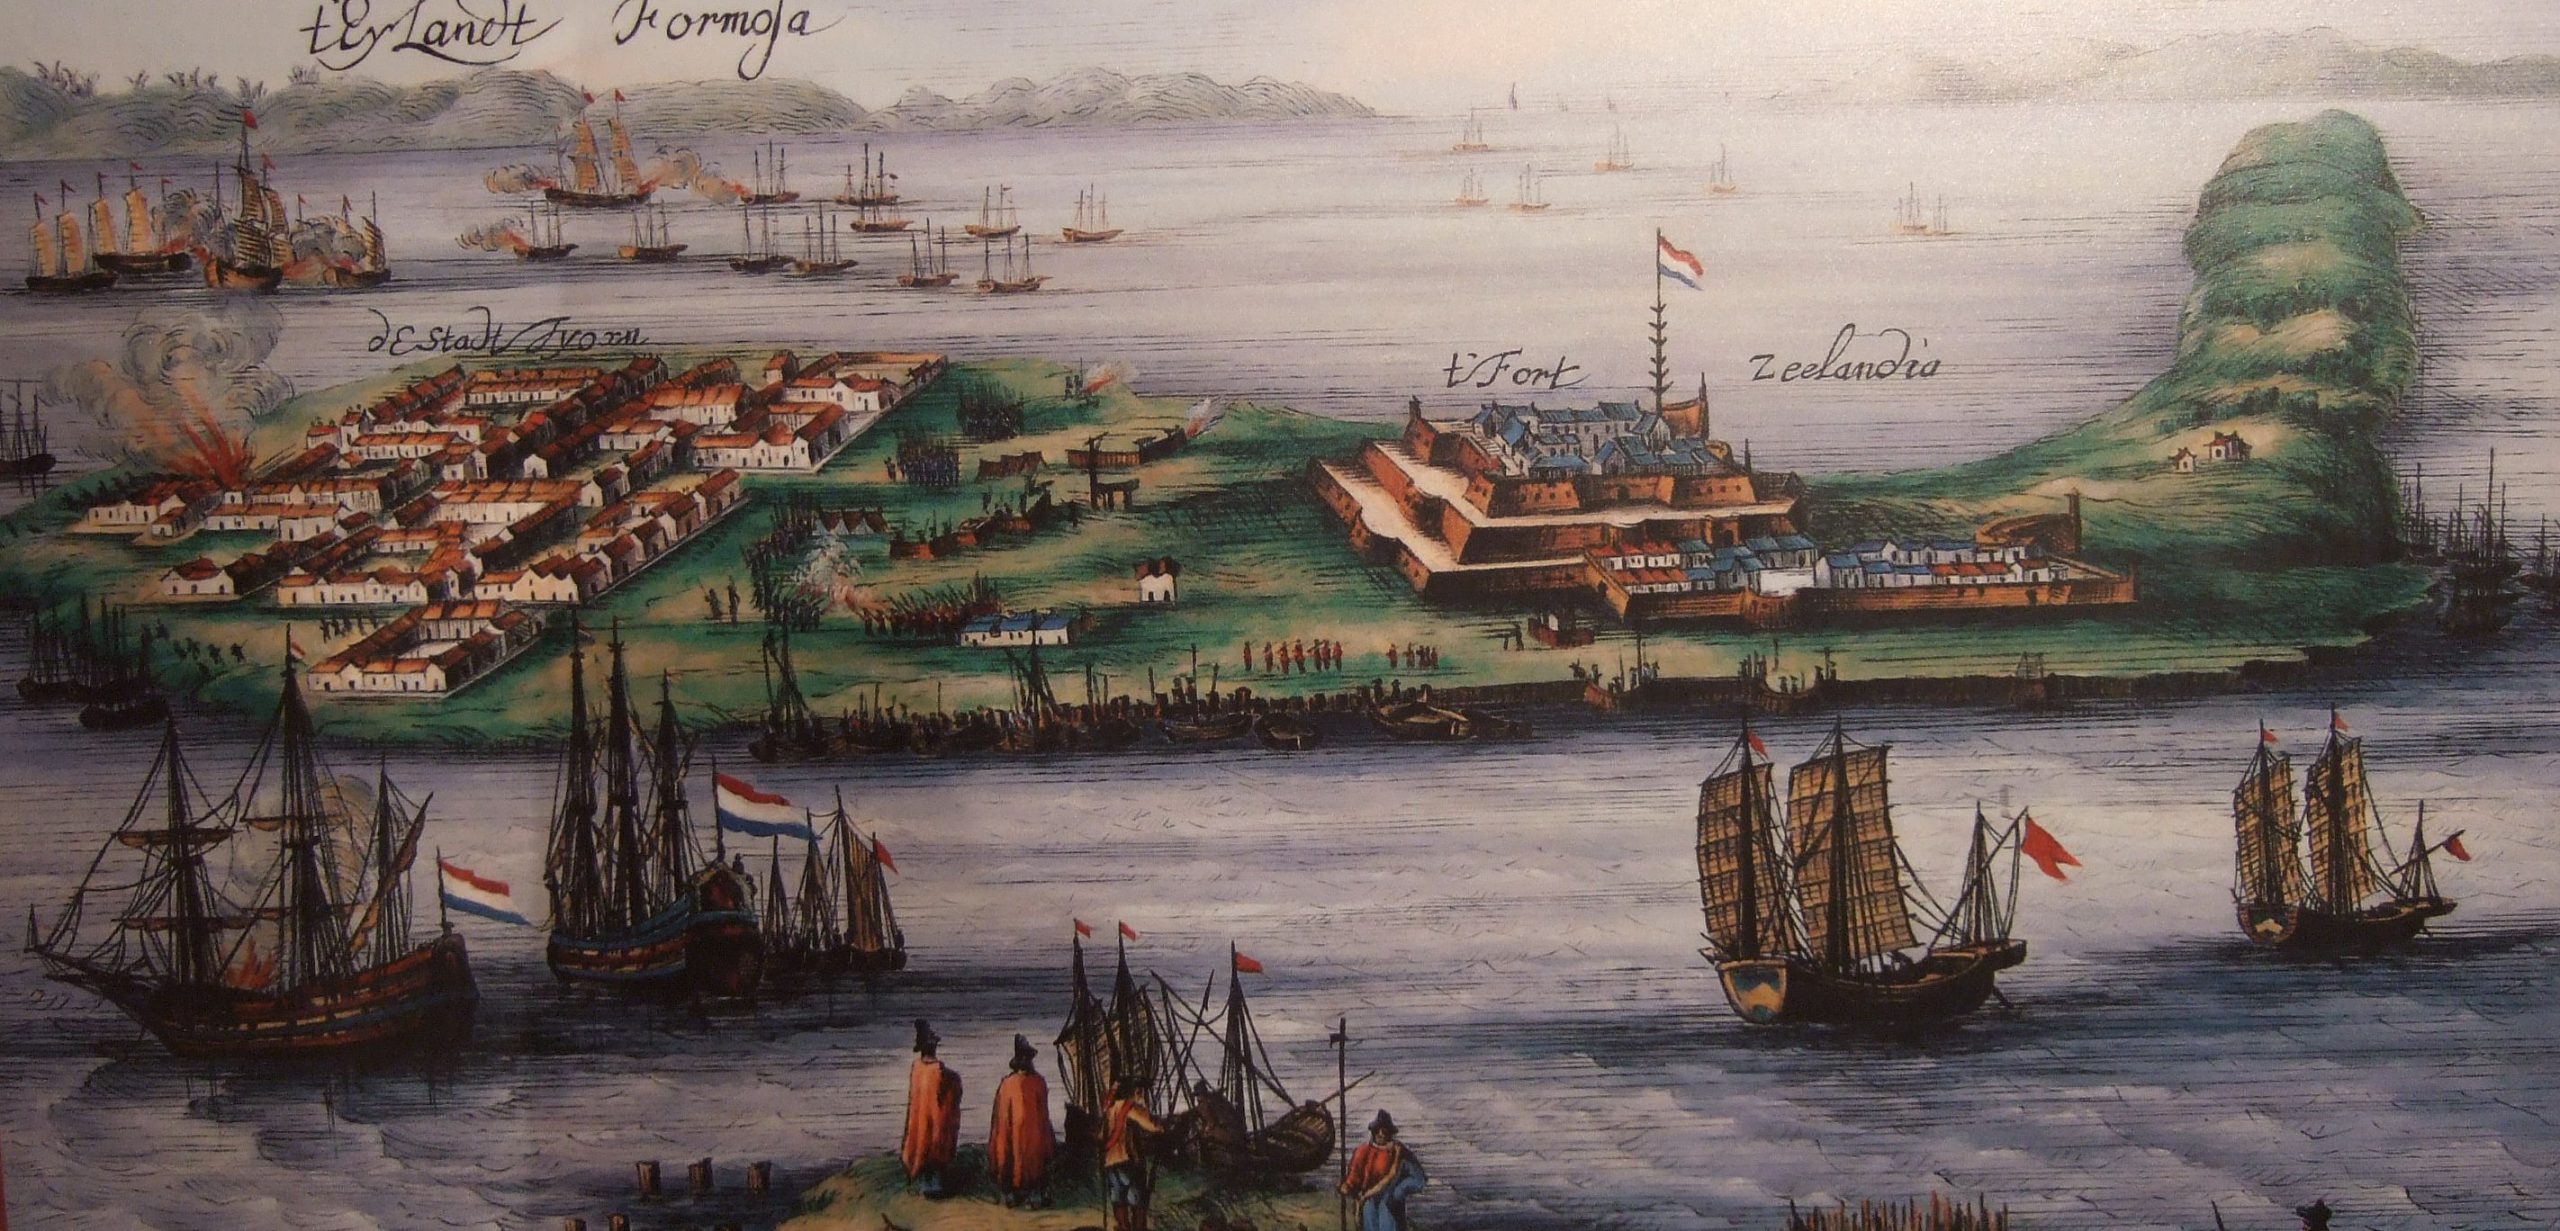 Dutch control: Fort Zeelandia, 1622-1662